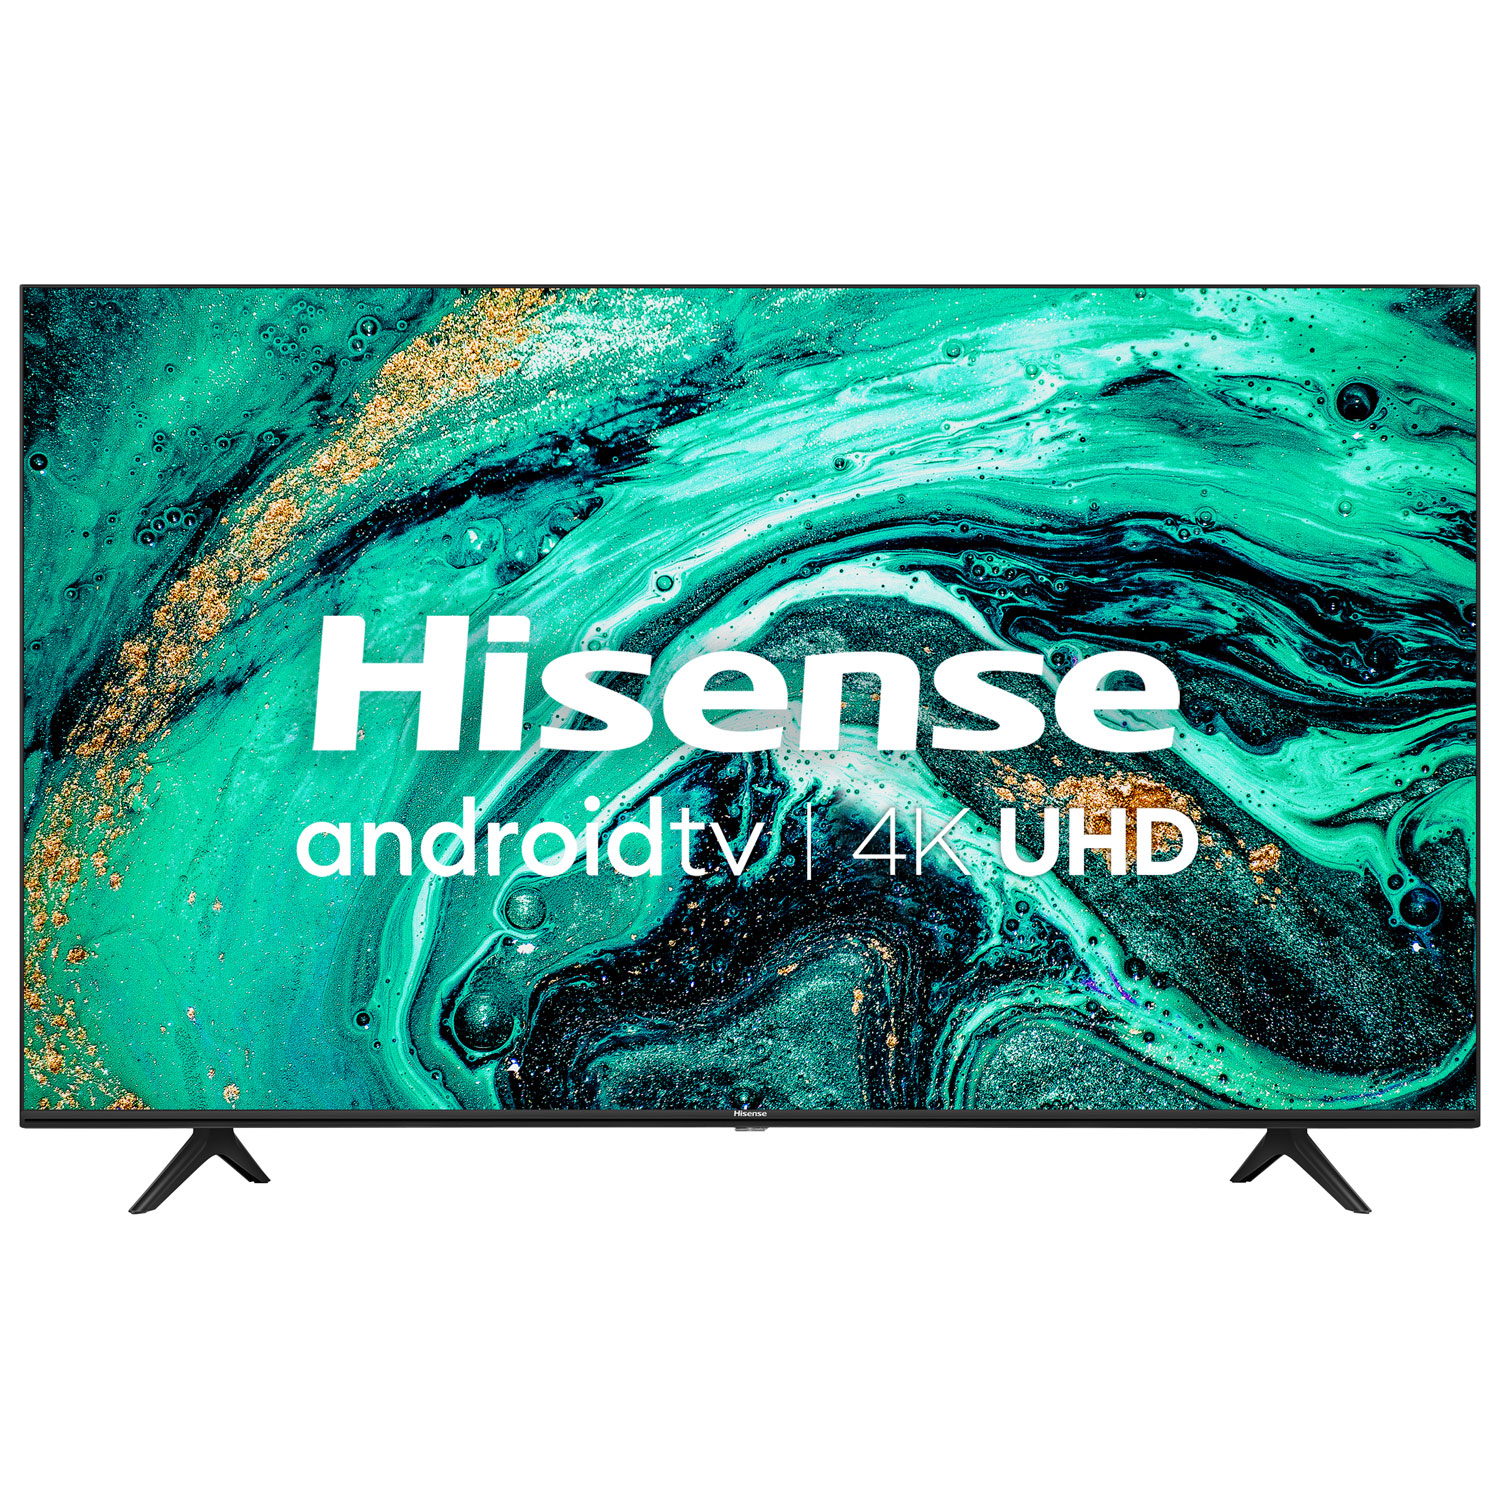 Hisense 43" 4K UHD HDR LED Android Smart TV (43H78G) - 2020